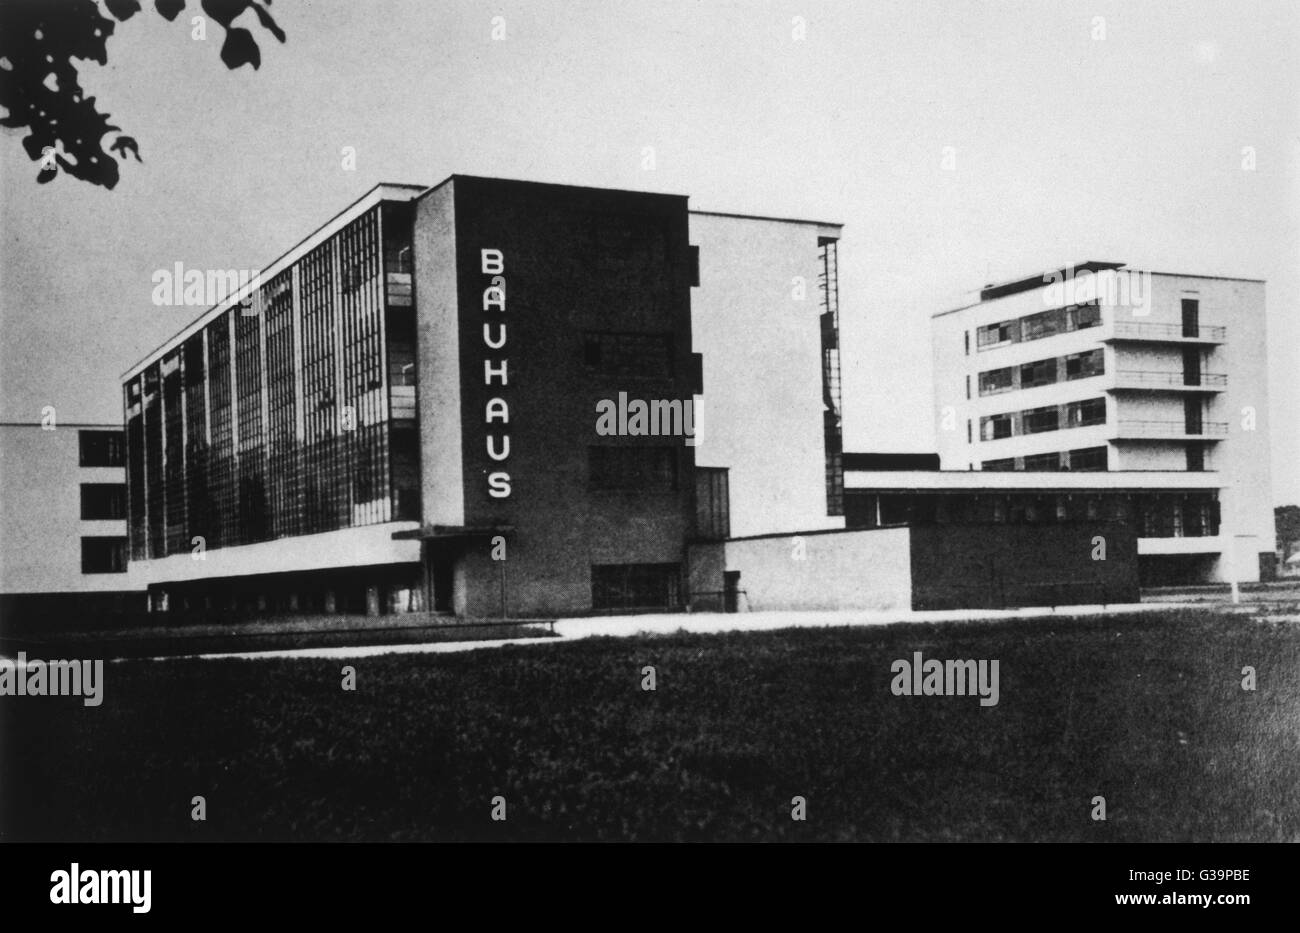 L'edificio Bauhaus di Dessau, città di fabbricazione nella Germania orientale. L edificio è stato costruito nel 1925 - 26 dall'architetto tedesco Walter Gropius. Data: 1930s Foto Stock